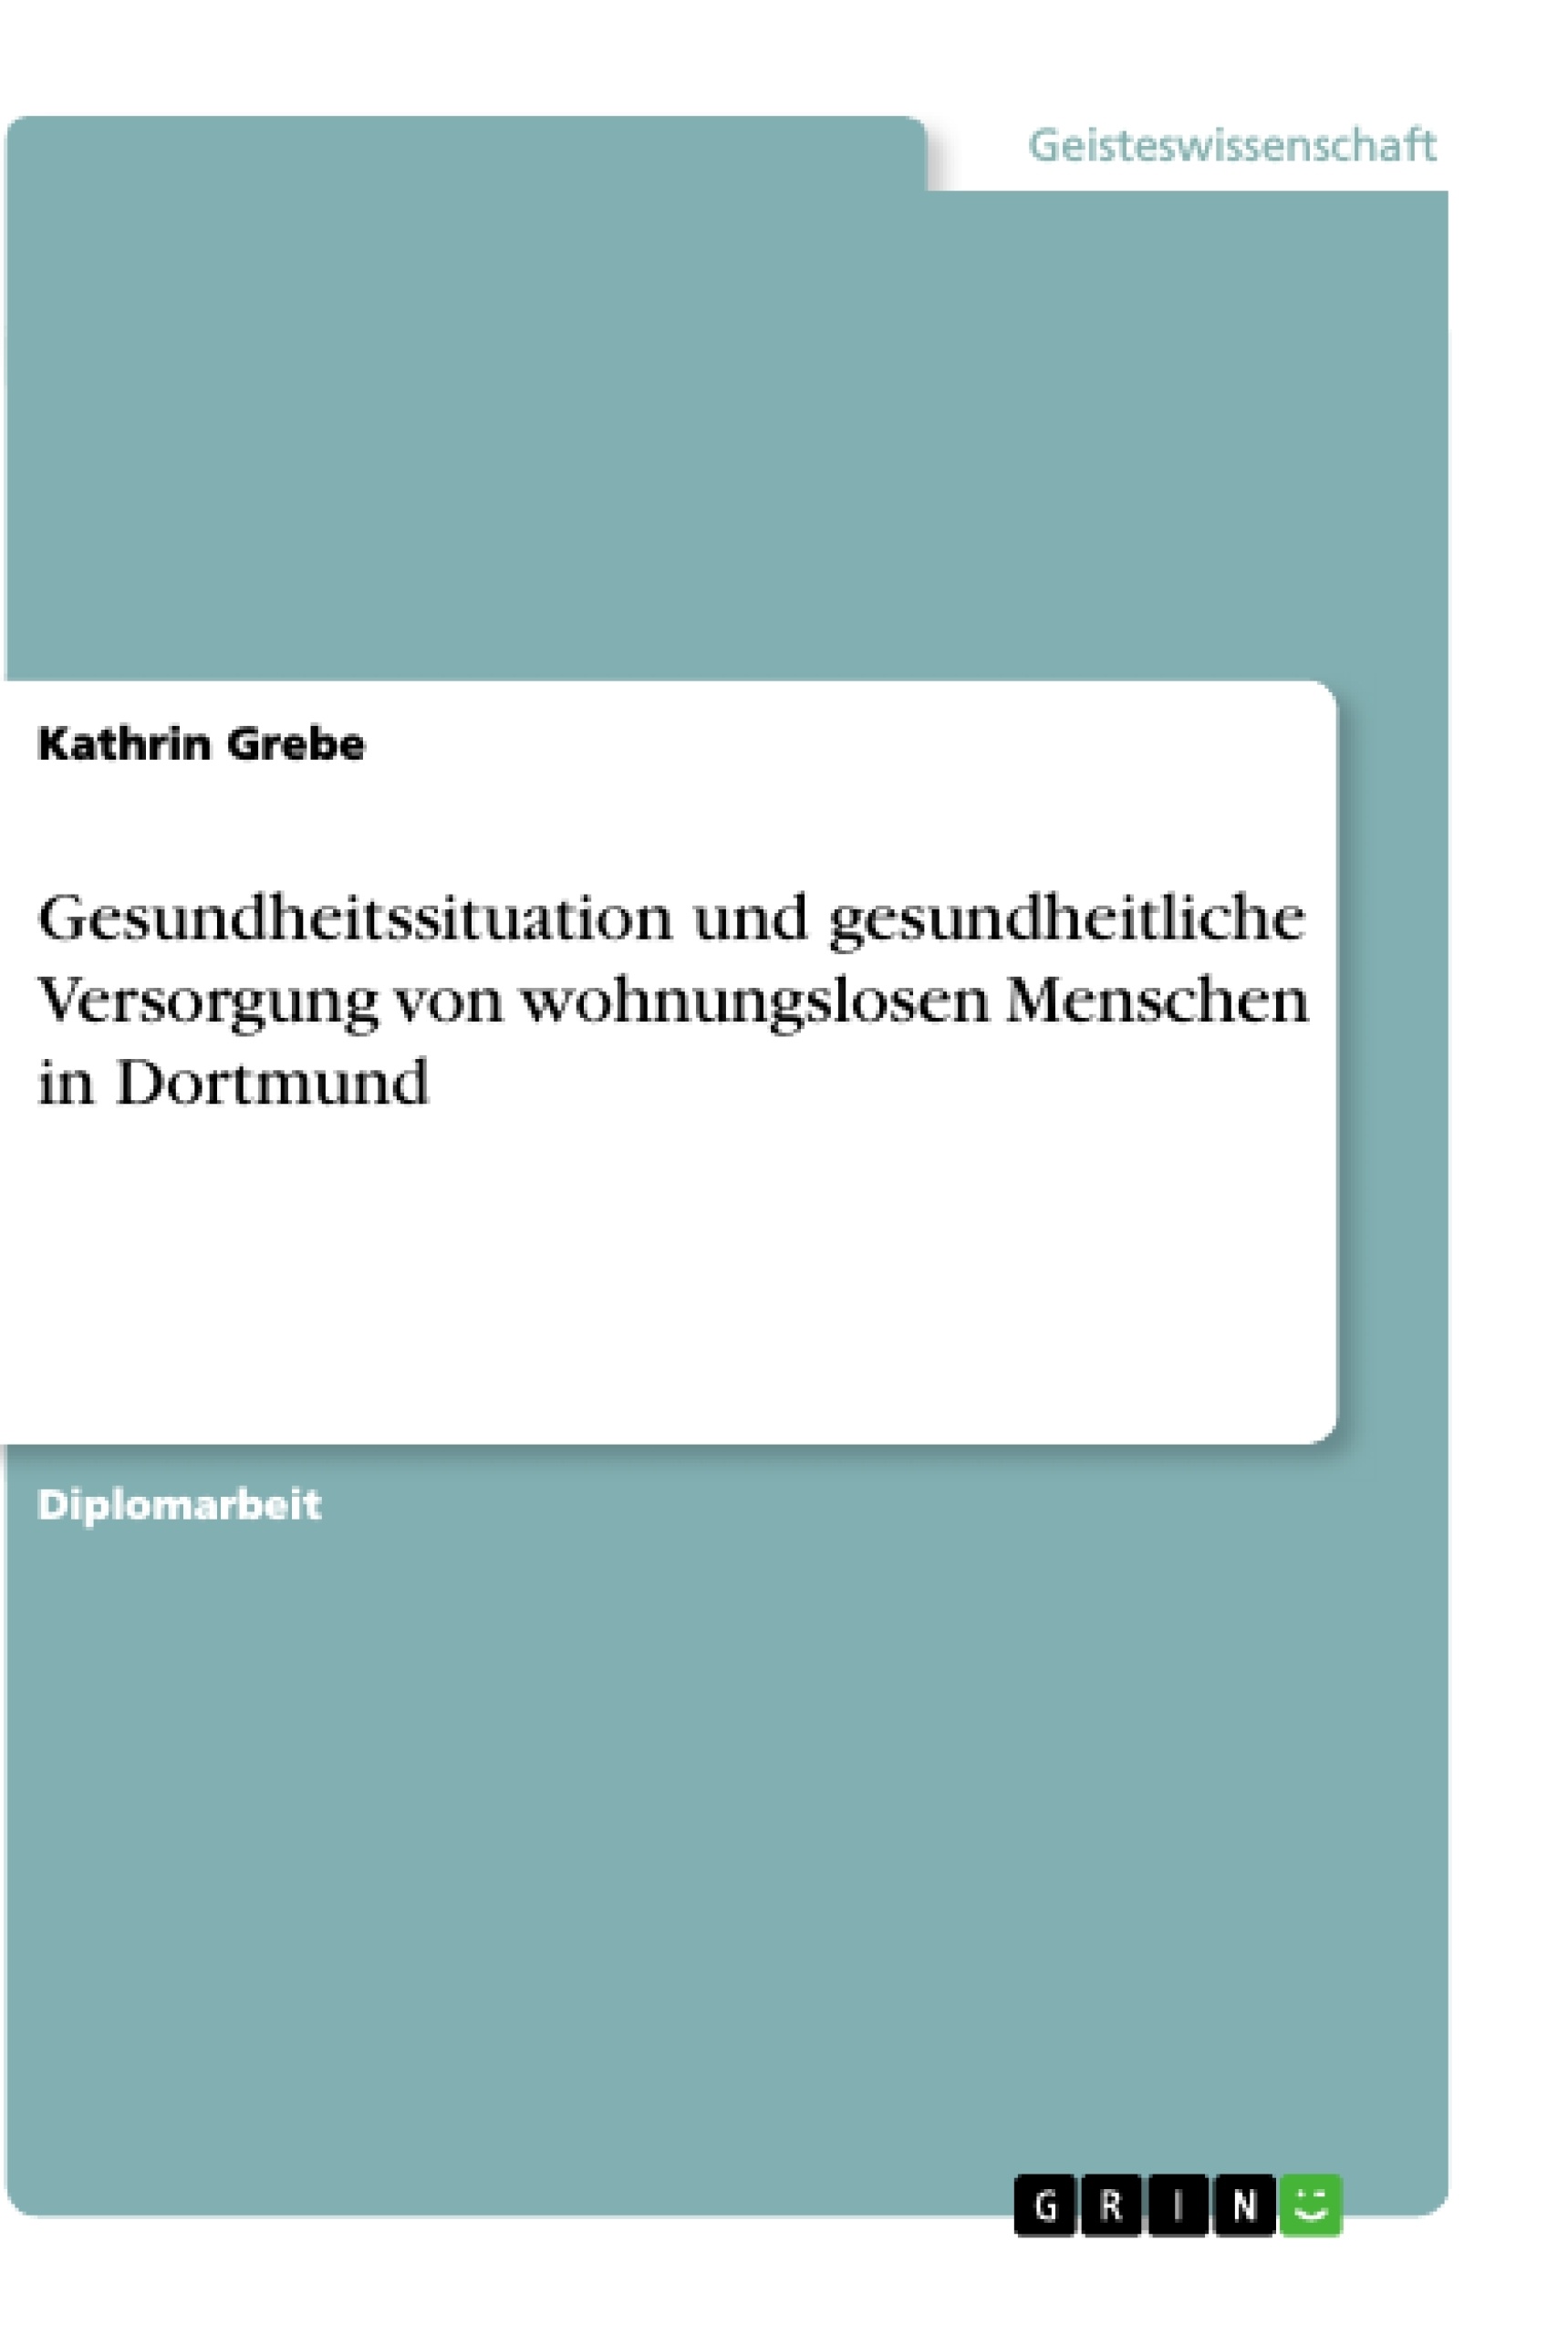 Title: Gesundheitssituation und gesundheitliche Versorgung von wohnungslosen Menschen in Dortmund